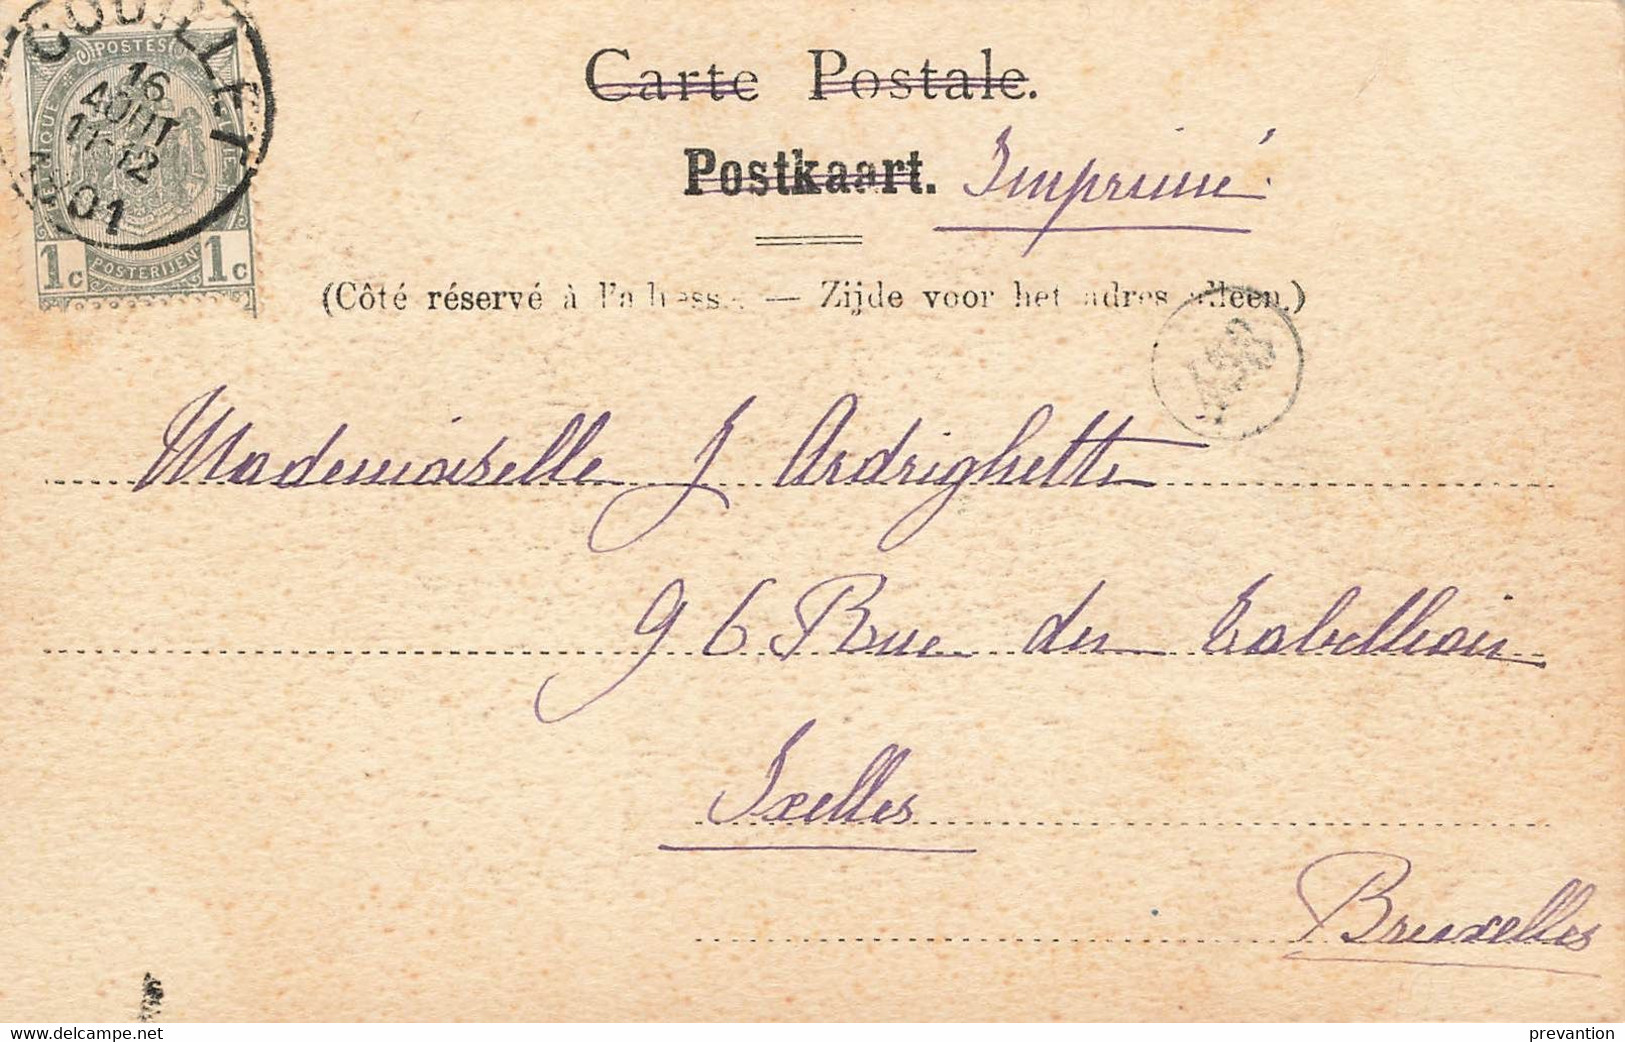 Les Environs Du ROEULX - Le Château De Boudry à MIGNAULT - Carte Circulé En 1901 - Le Roeulx